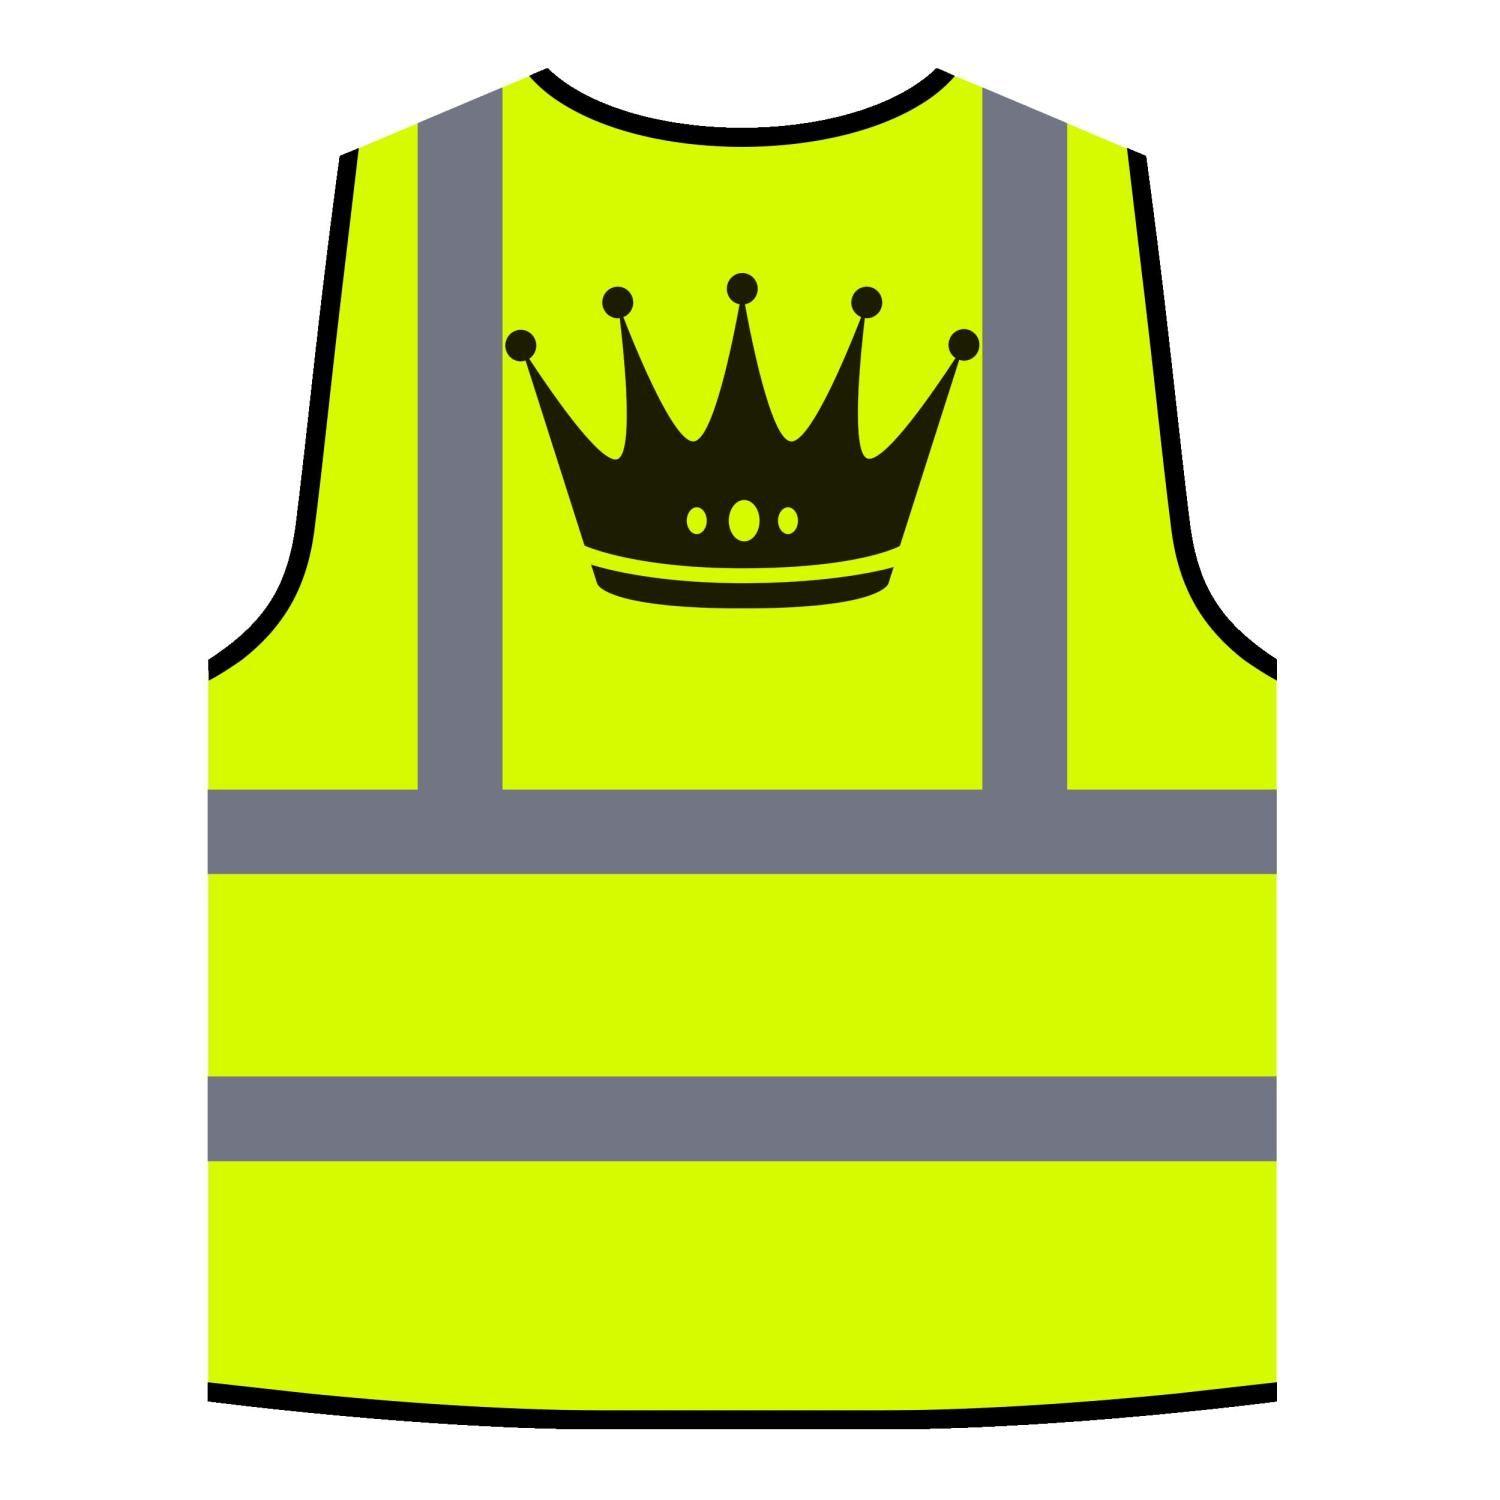 Funny Orange Logo - Crown King Queen Art Funny Novelty Yellow Orange Safety Vest A579v